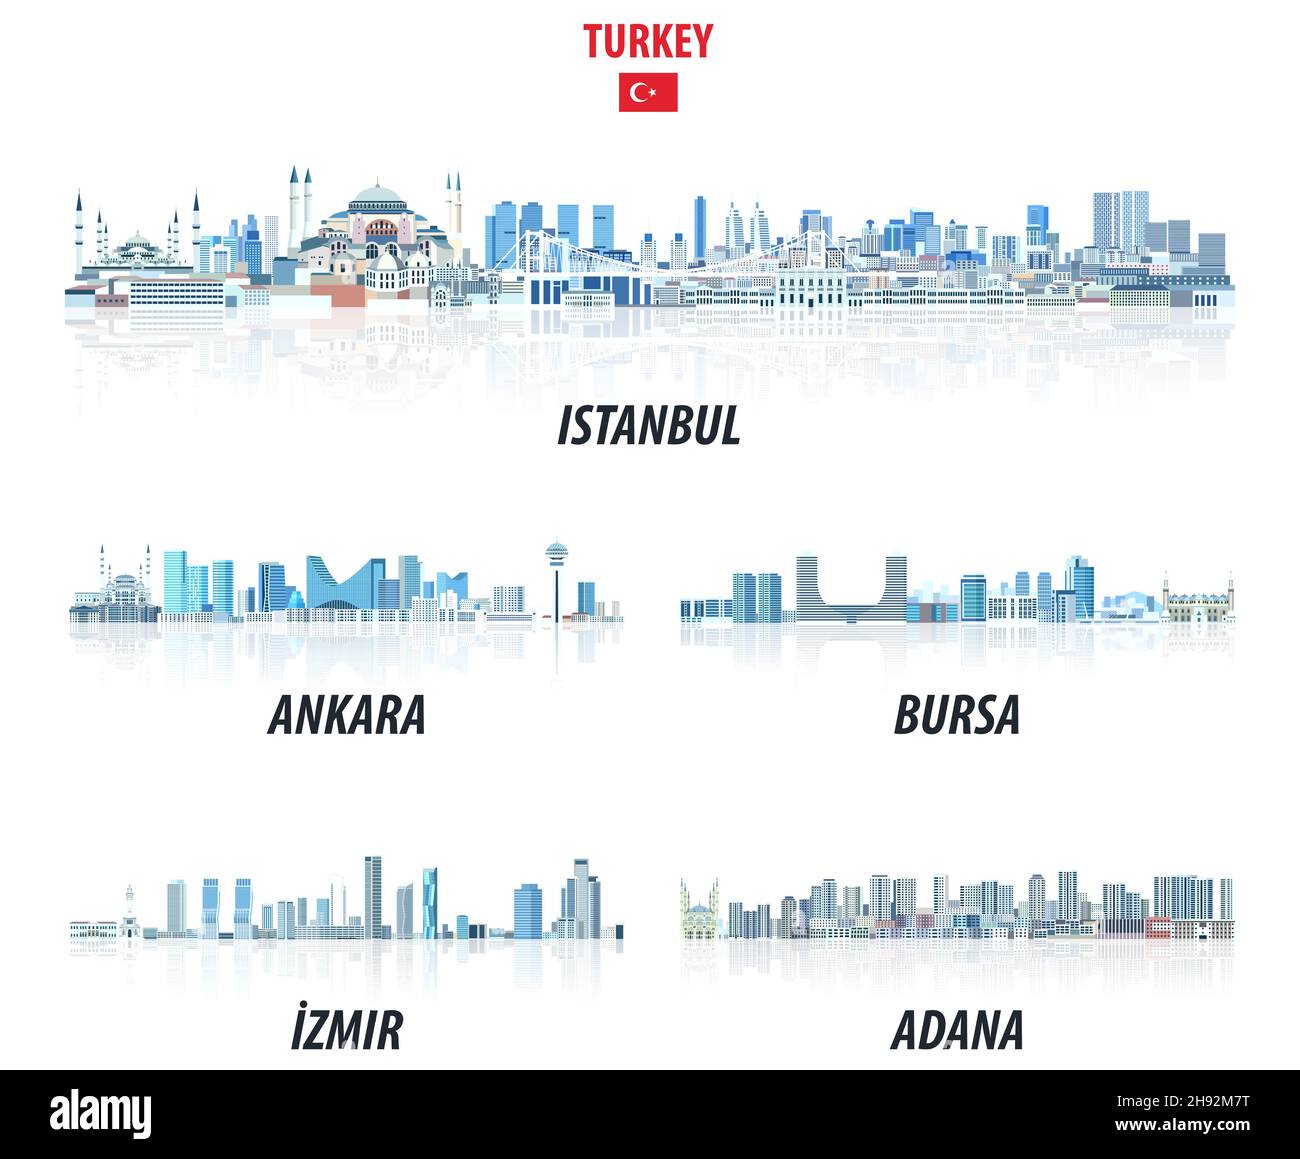 Les plus grandes villes turques s'enorrent dans des teintes de couleur bleue. Style esthétique de la nystale Illustration de Vecteur